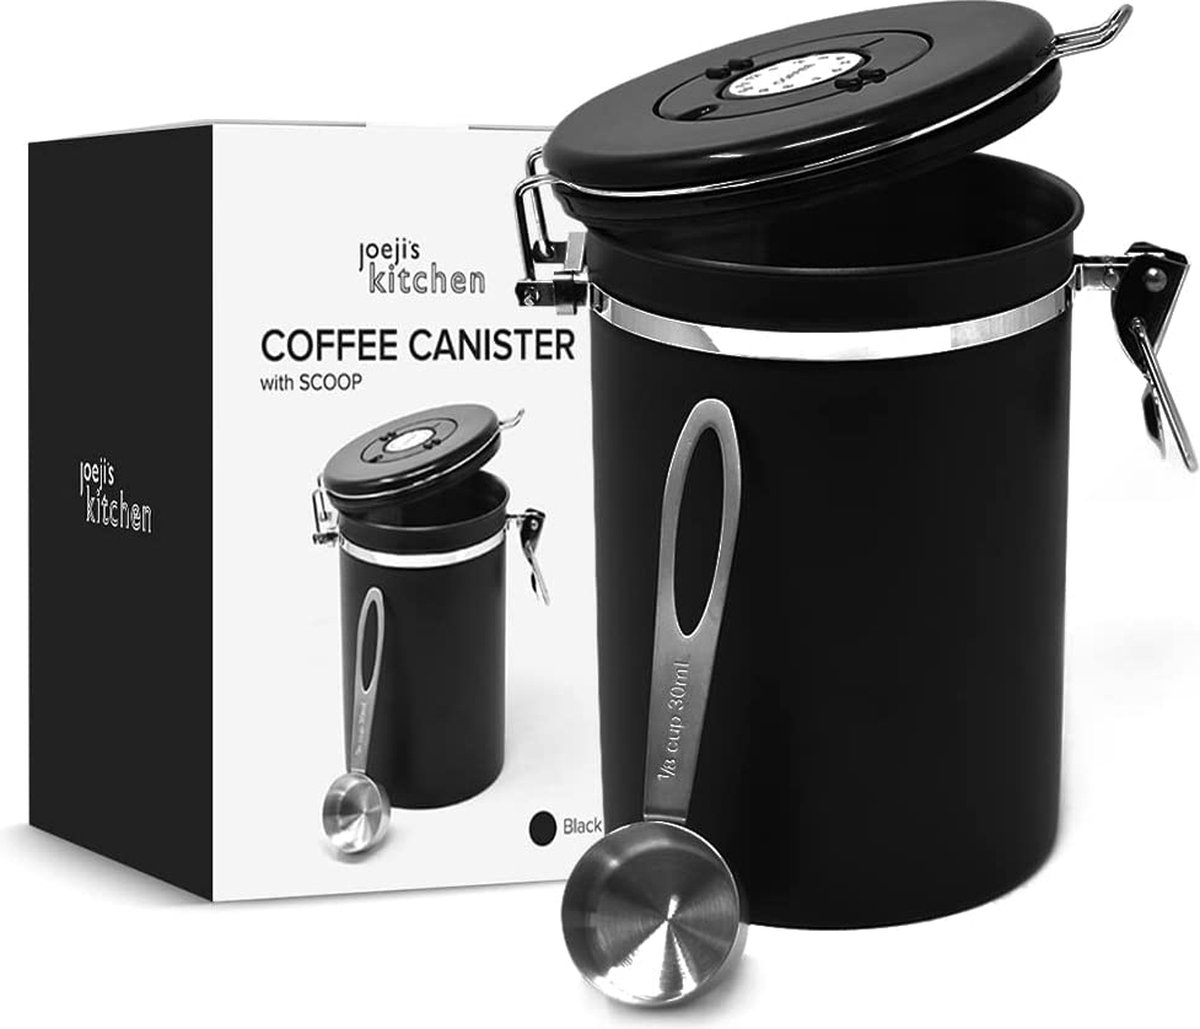 Joejis Kitchen Hoogwaardige koffiebonencontainer zwart, luchtdichte koffiekan Maximale capaciteit 500-600 gram koffiebonen zwart, ideaal voor het bewaren van koffie